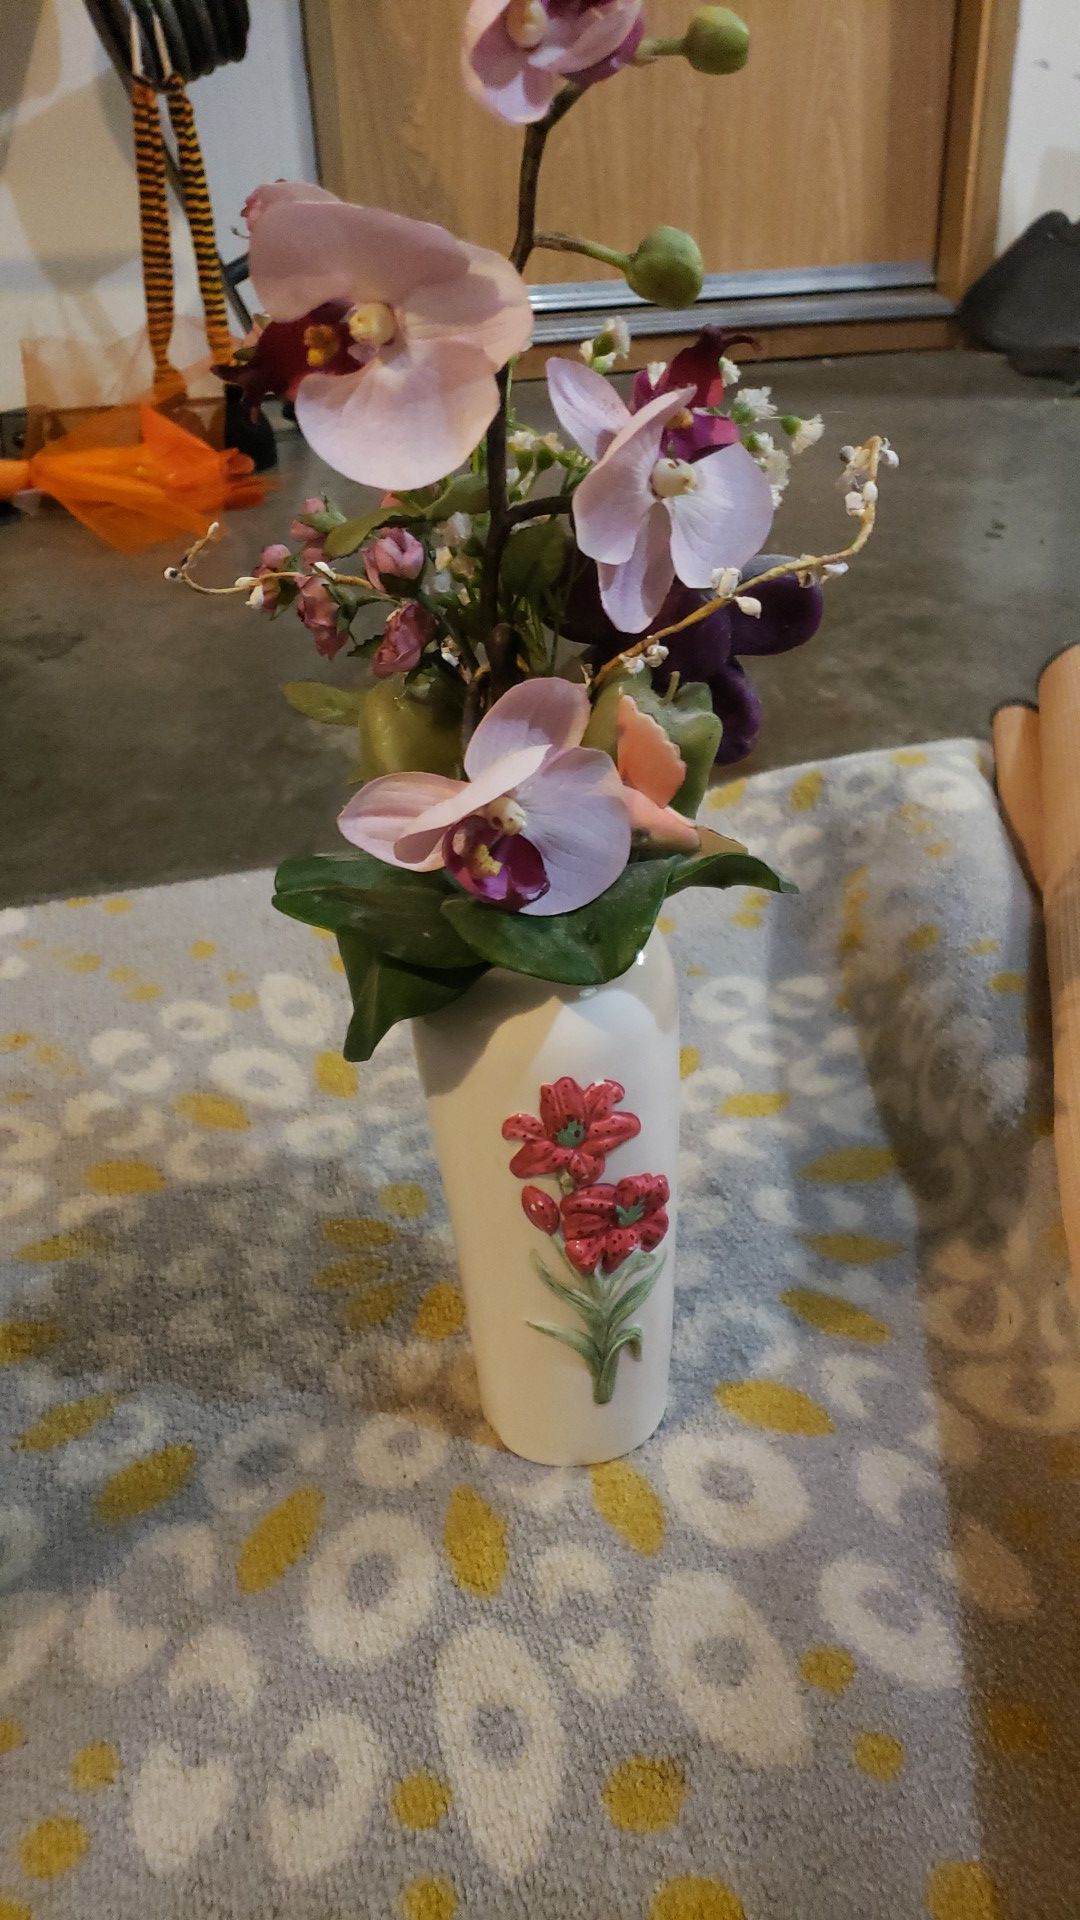 Flowers w/ vase